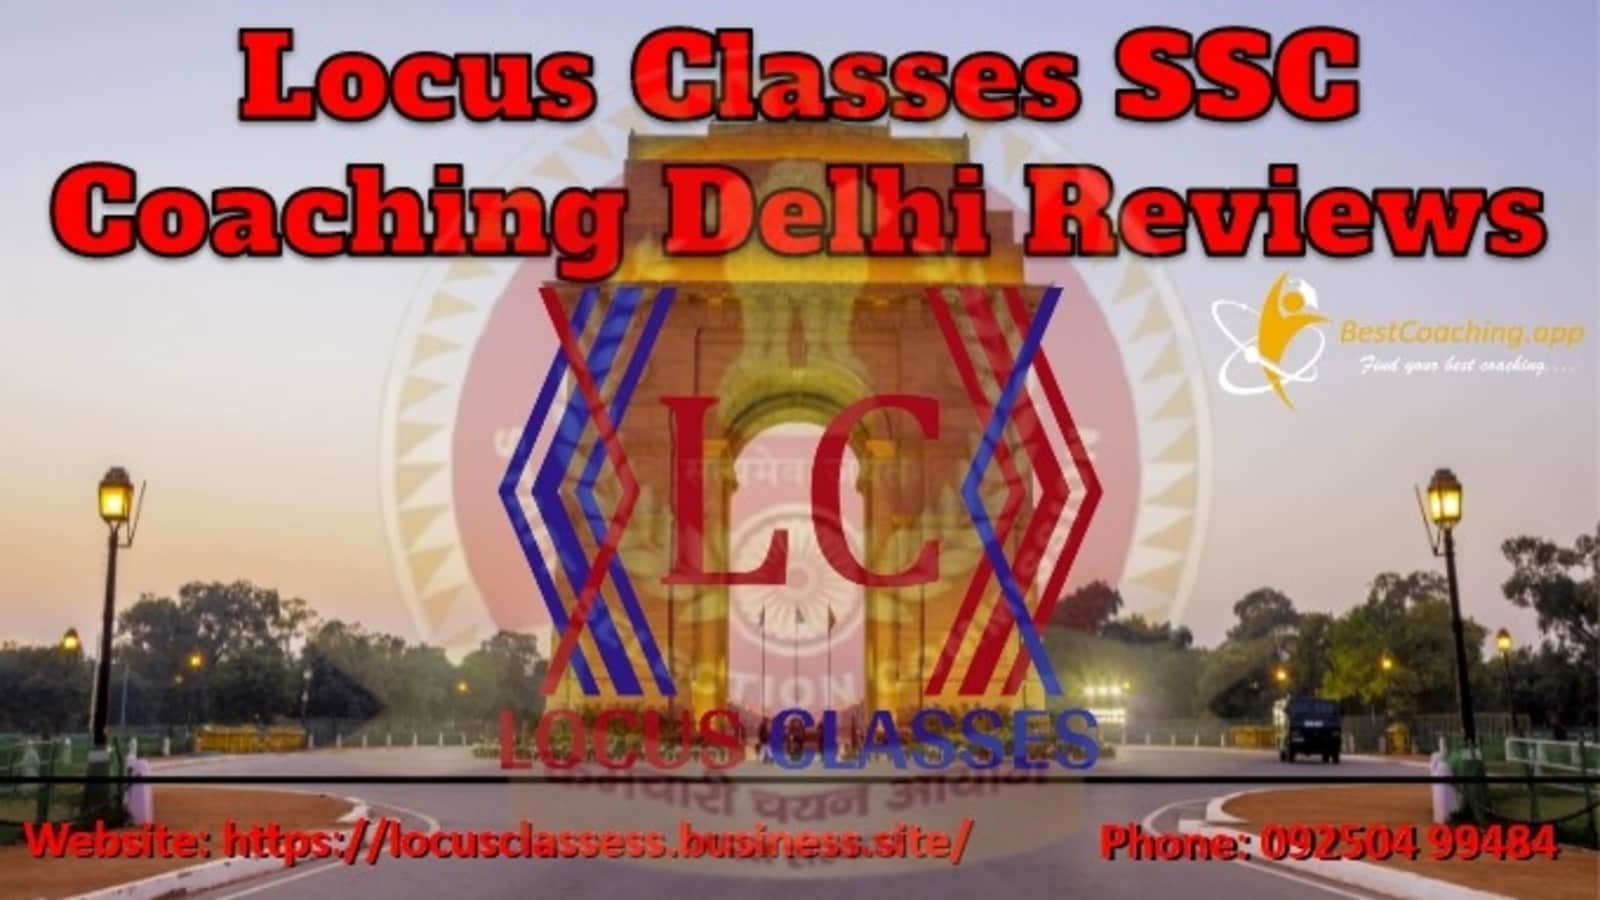 Locus Classes SSC Coaching in Delhi